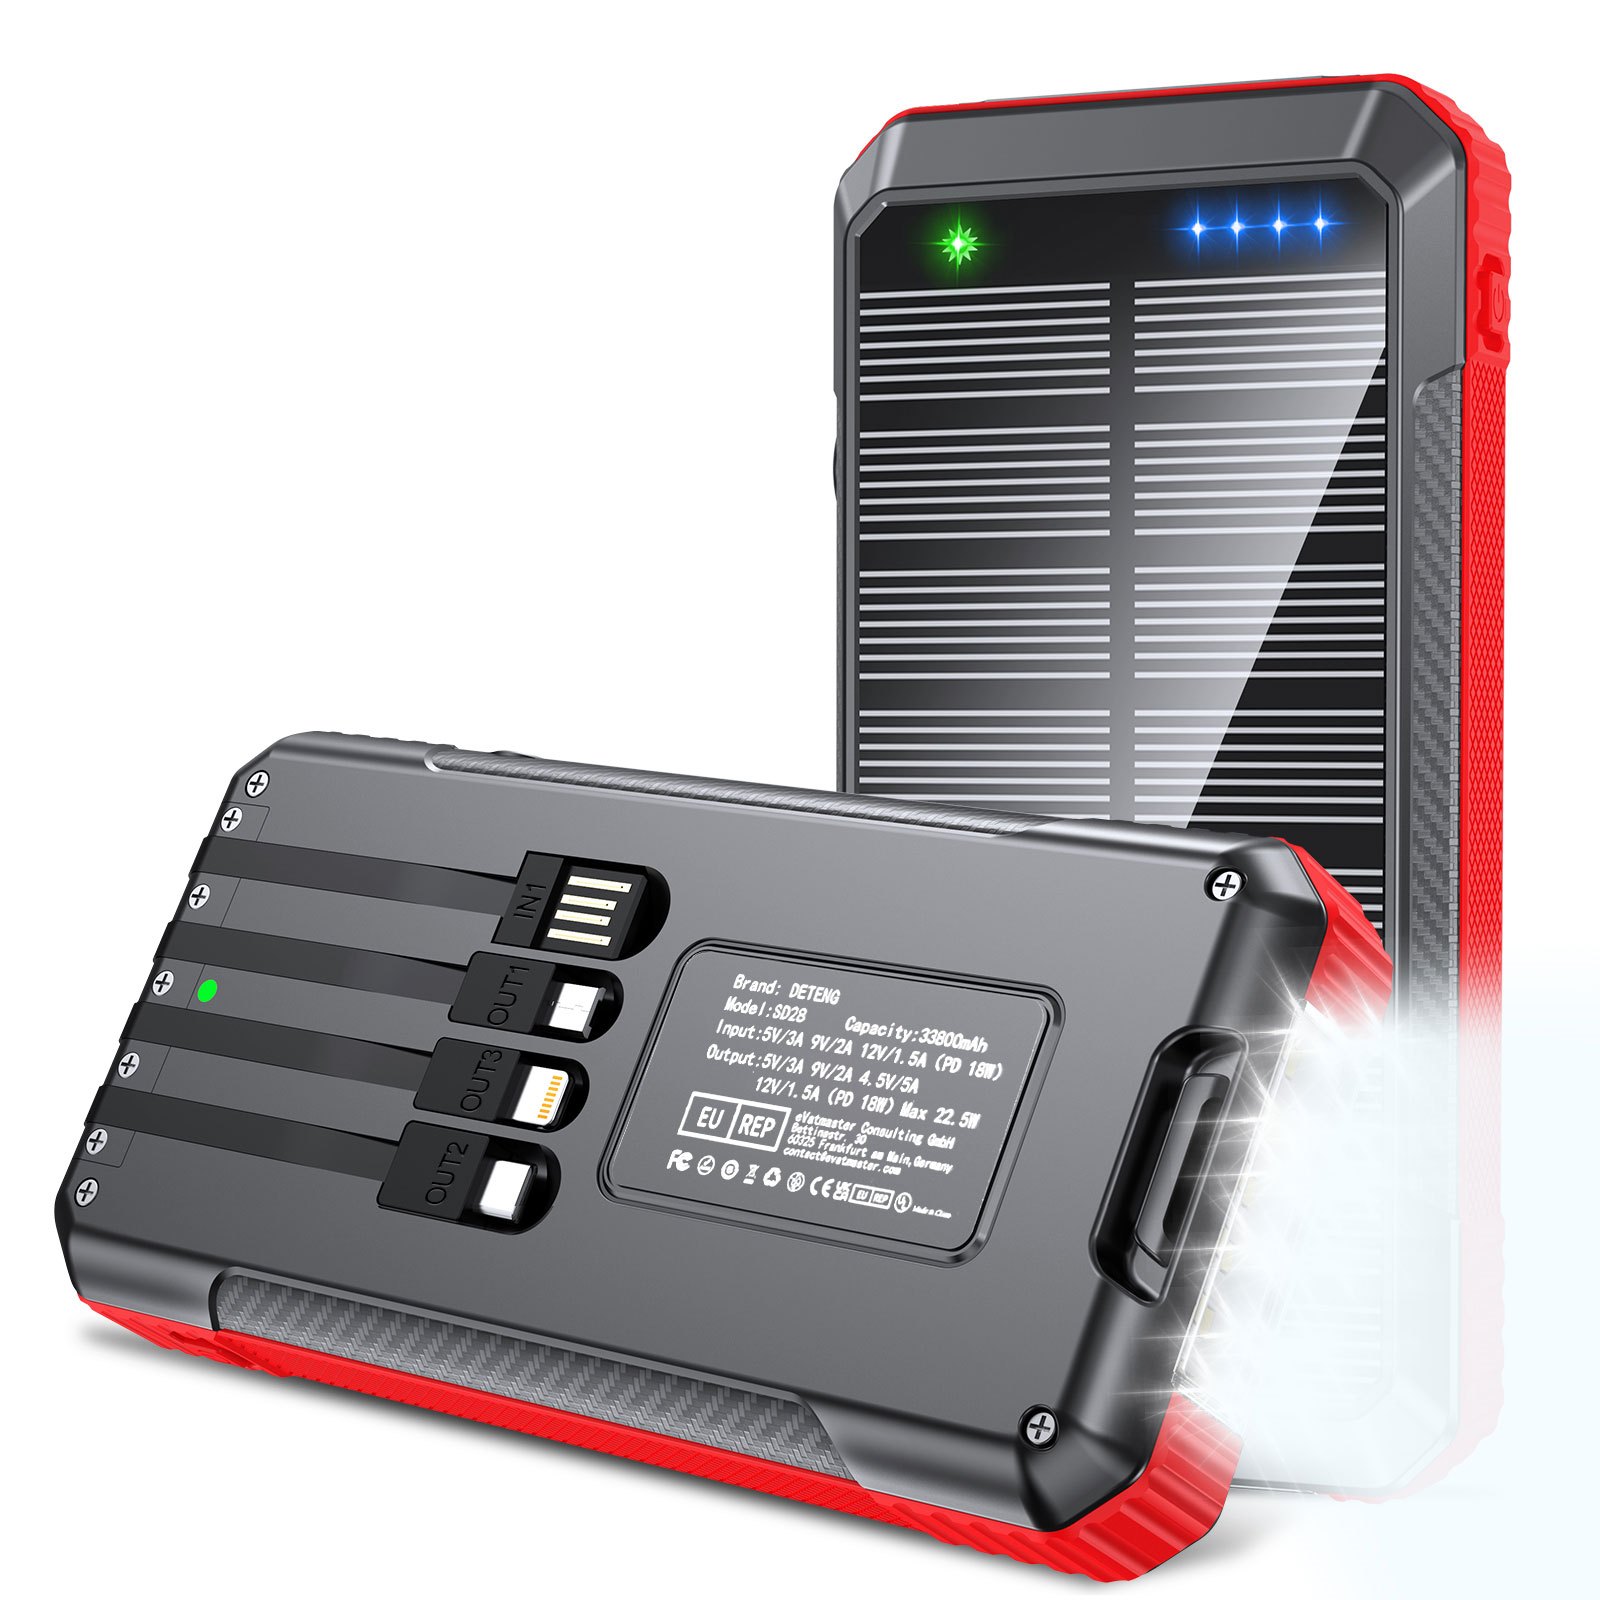 Cargador portátil inalámbrico 5 en 1, 36800 mAh, 5 salidas Dual QC4.0 25W  PD USB C, carga rápida inalámbrica de 15 W, cargador solar IP65 compatible